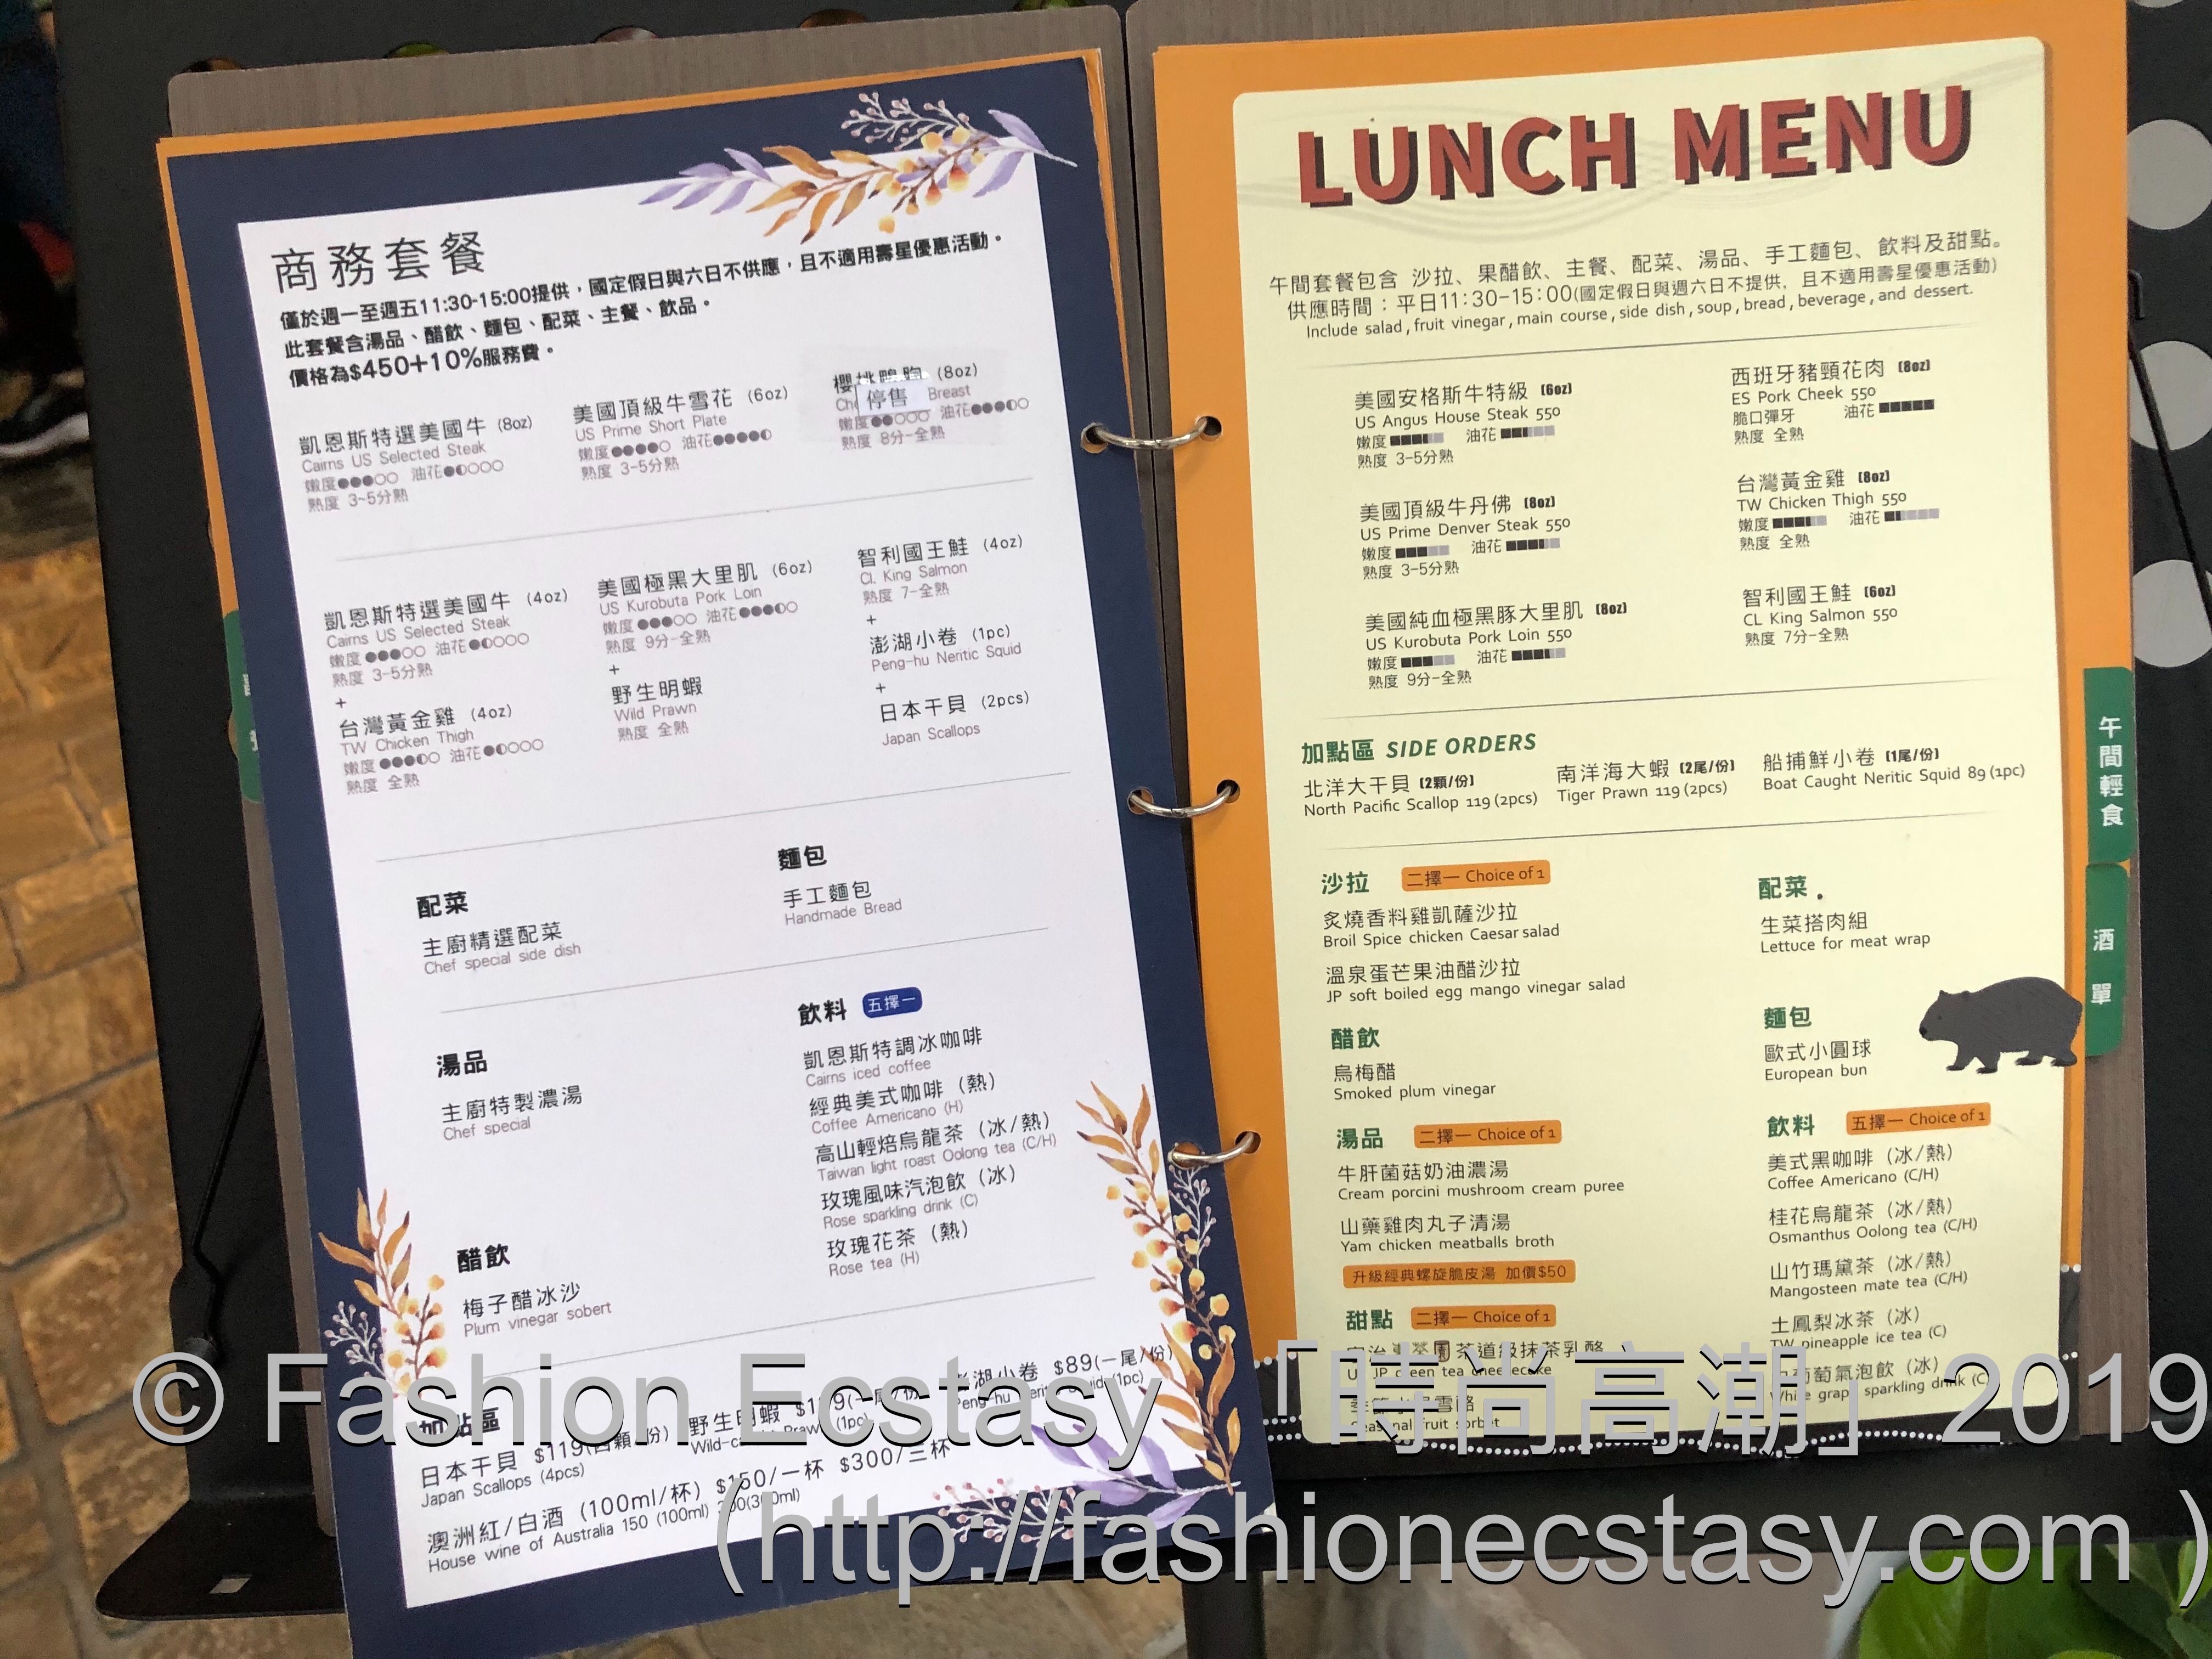 凱恩斯岩燒餐廳(大安店) 菜單 Menù / Cairns Stone Grill Restaurant Taipei menu